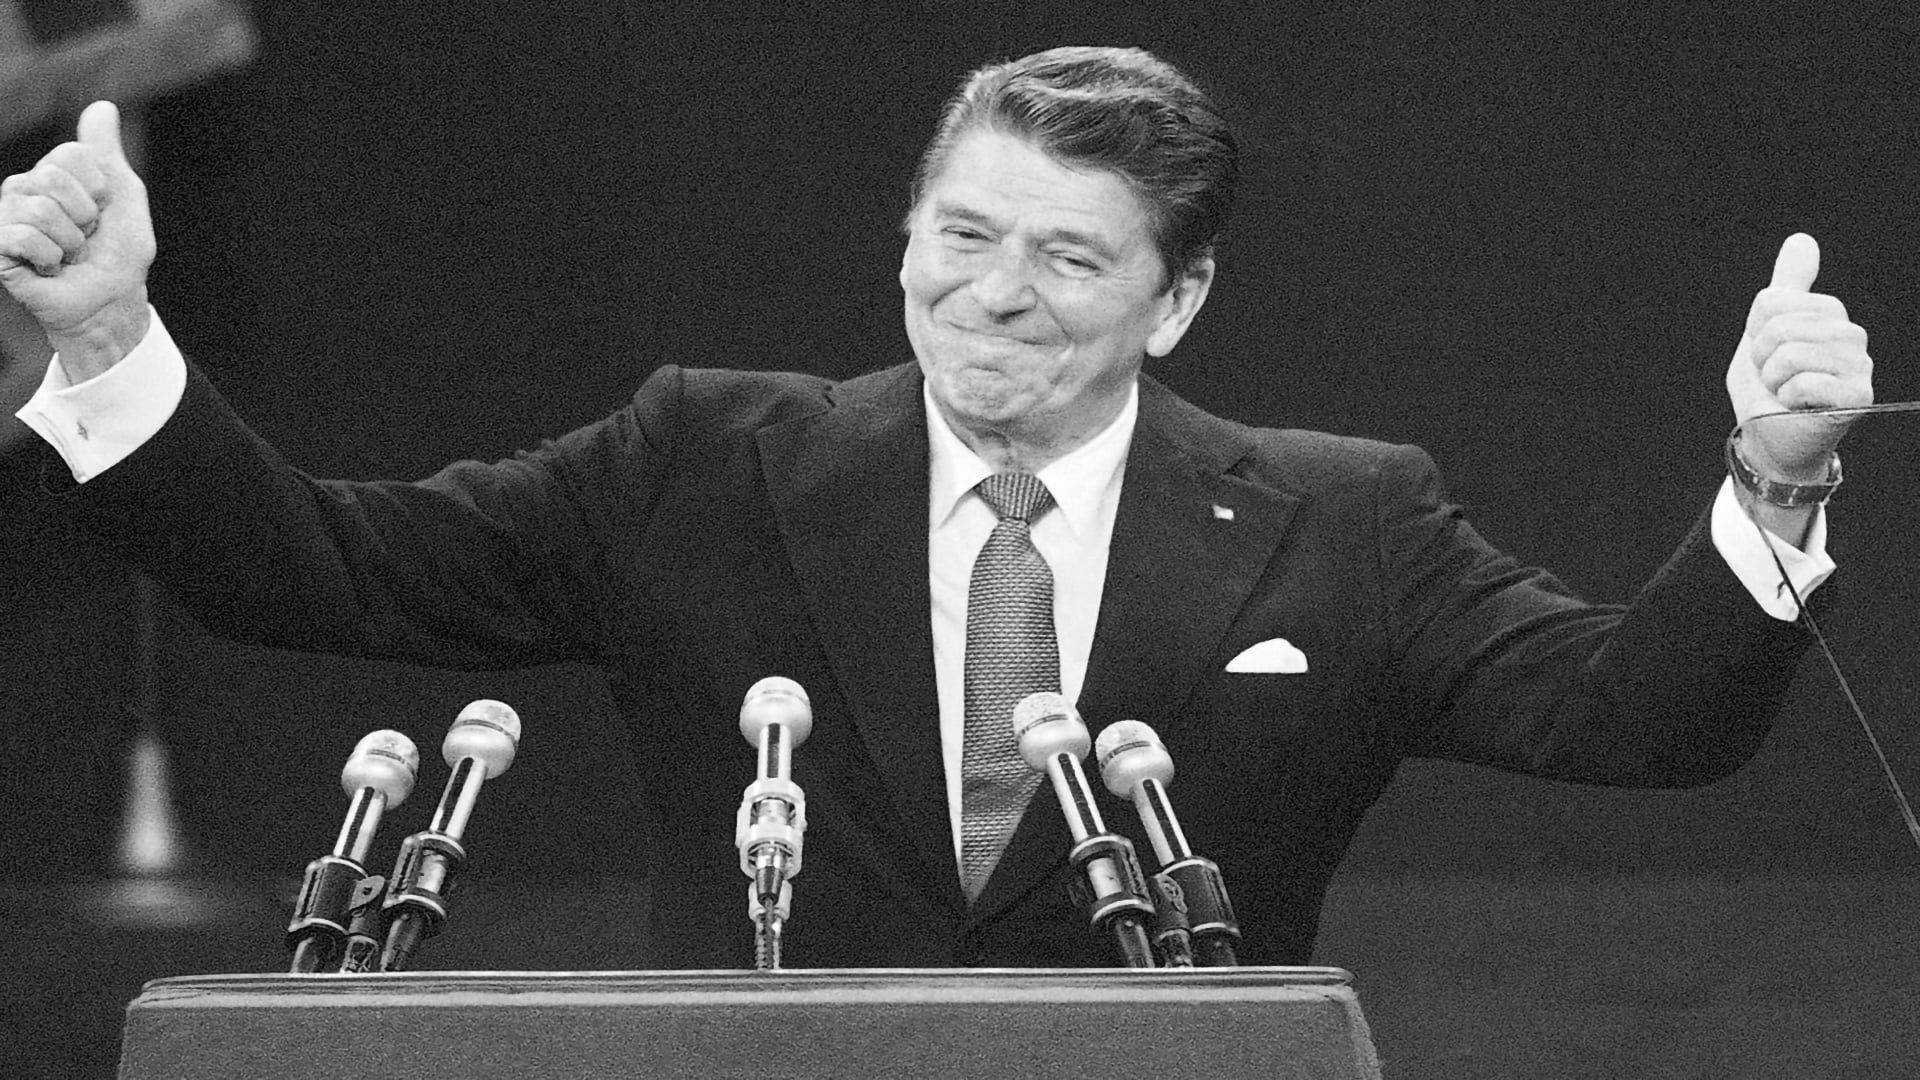 Ronald Reagan un président sur mesure background